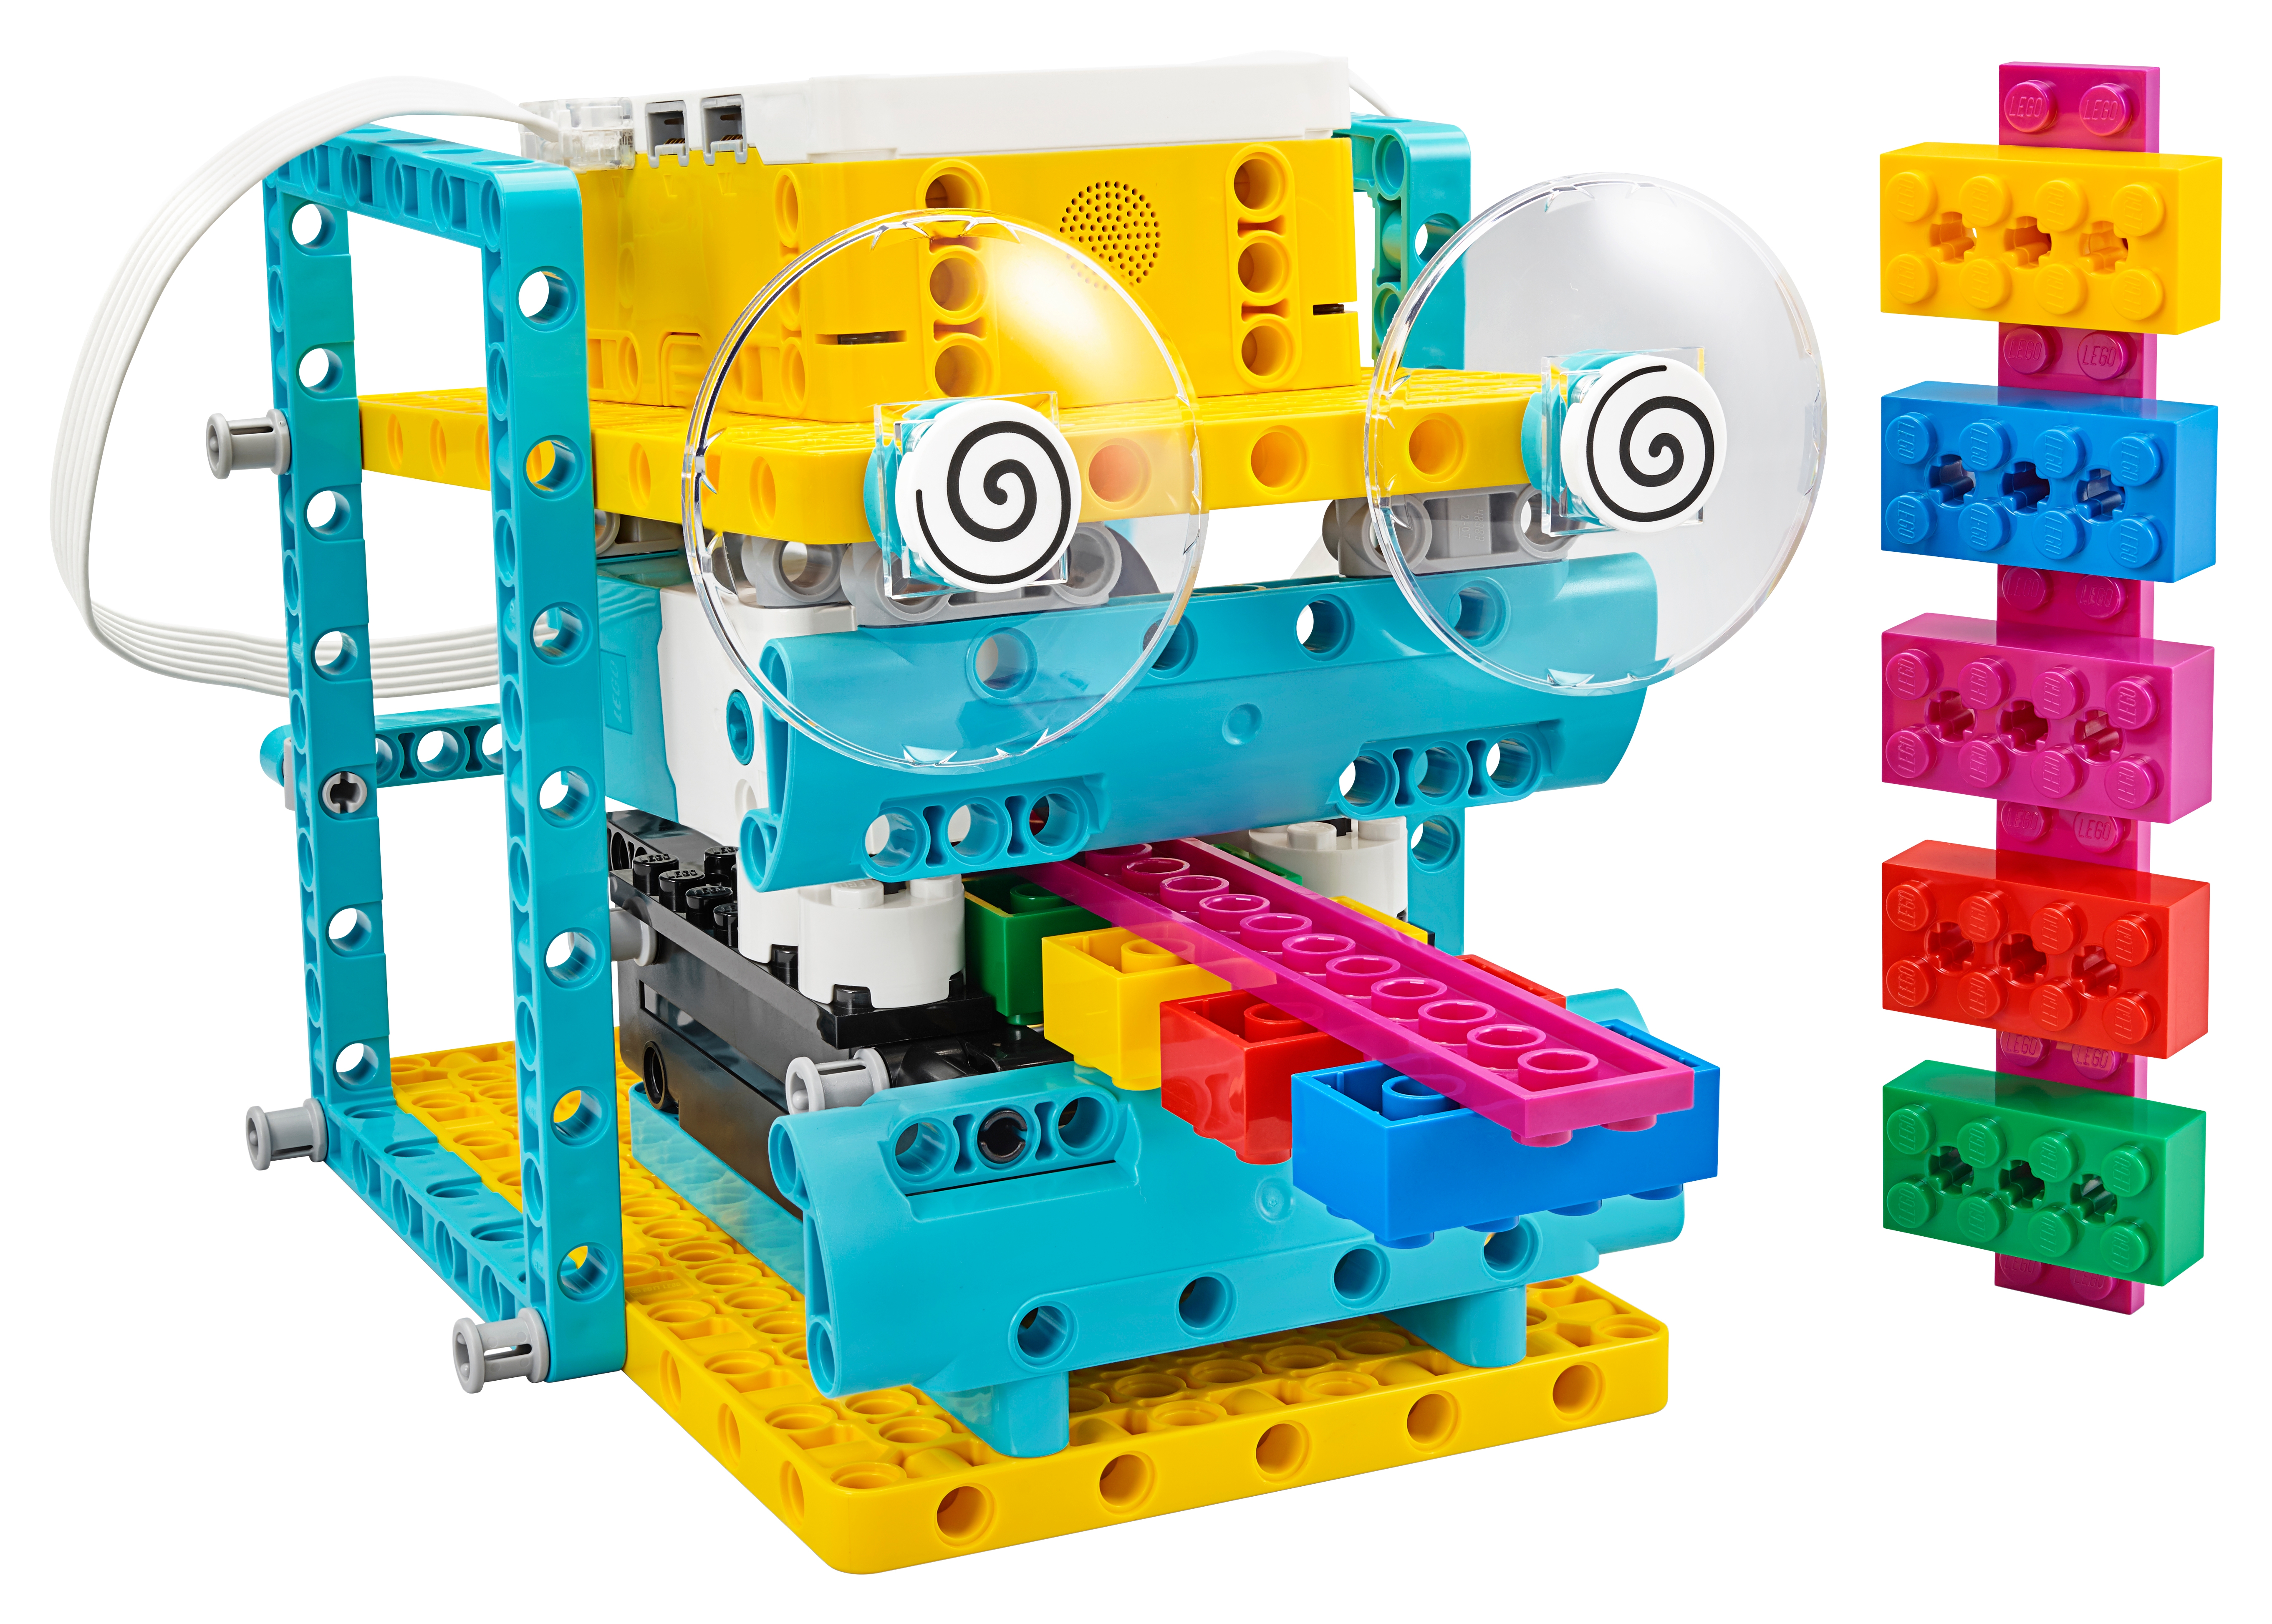 45678 Spike Prime Set nuevo envío gratuito a todo el mundo Lego Educación